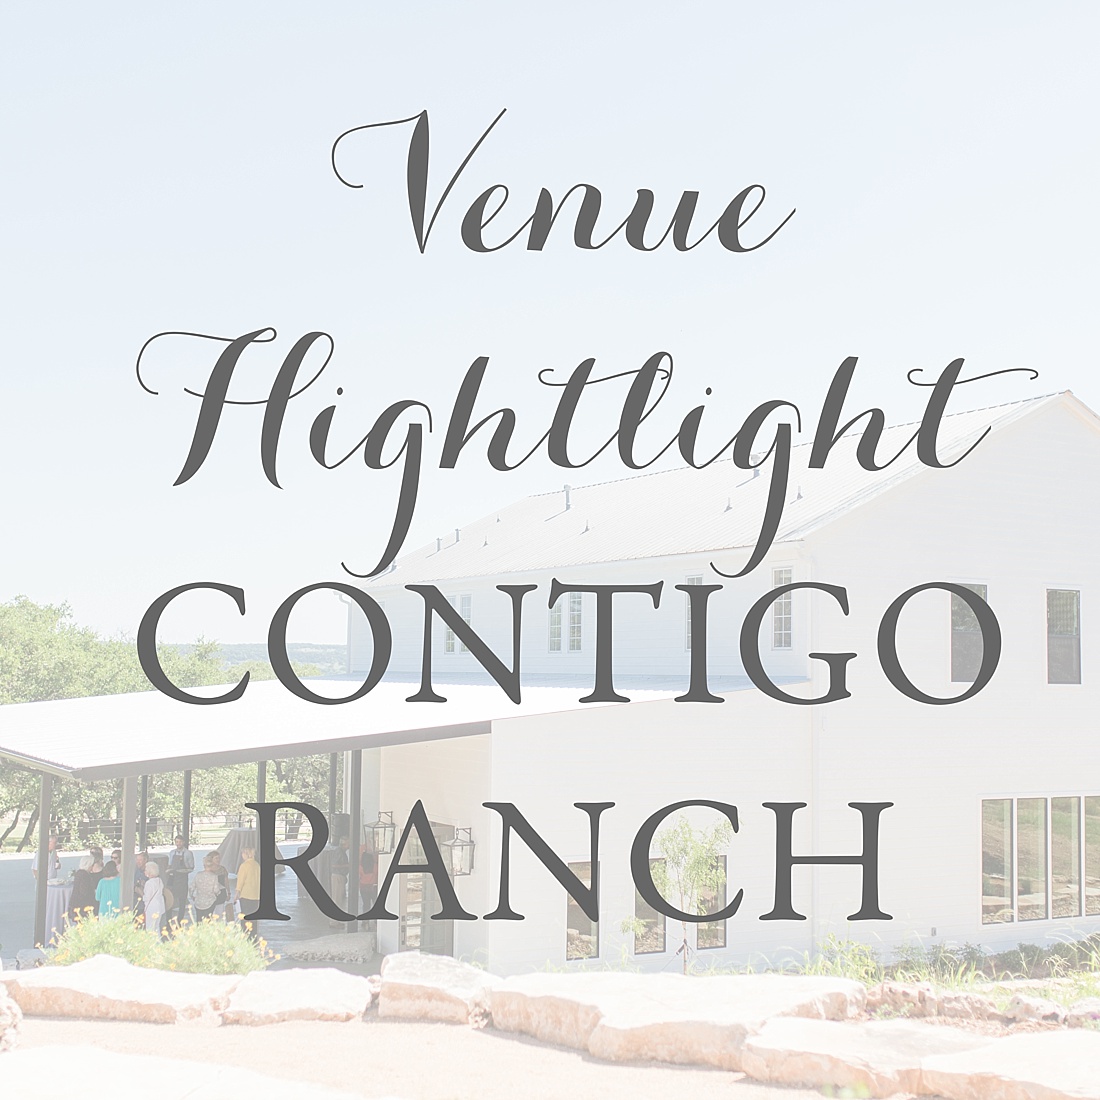 Contigo Ranch Fredericksburg Texas Wedding Venue 0027